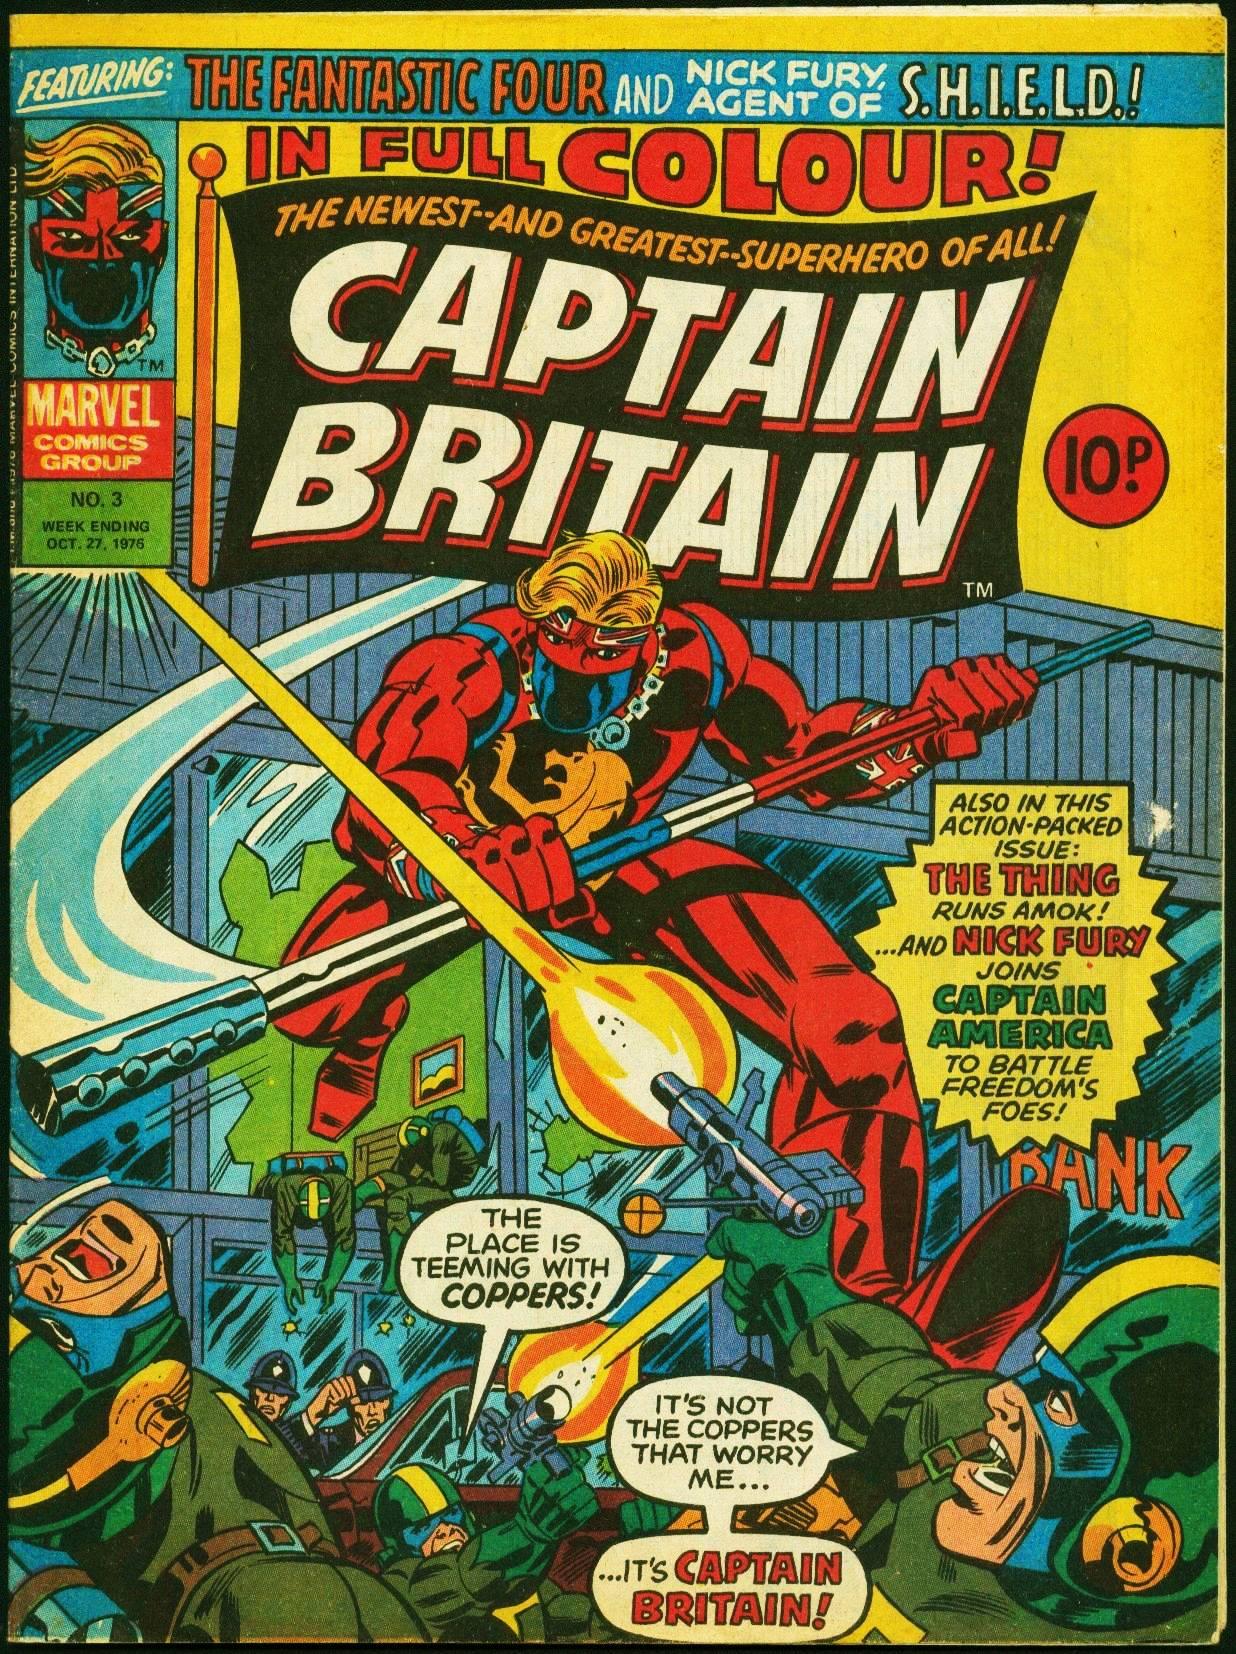 Captain Britain Vol. 1 #3